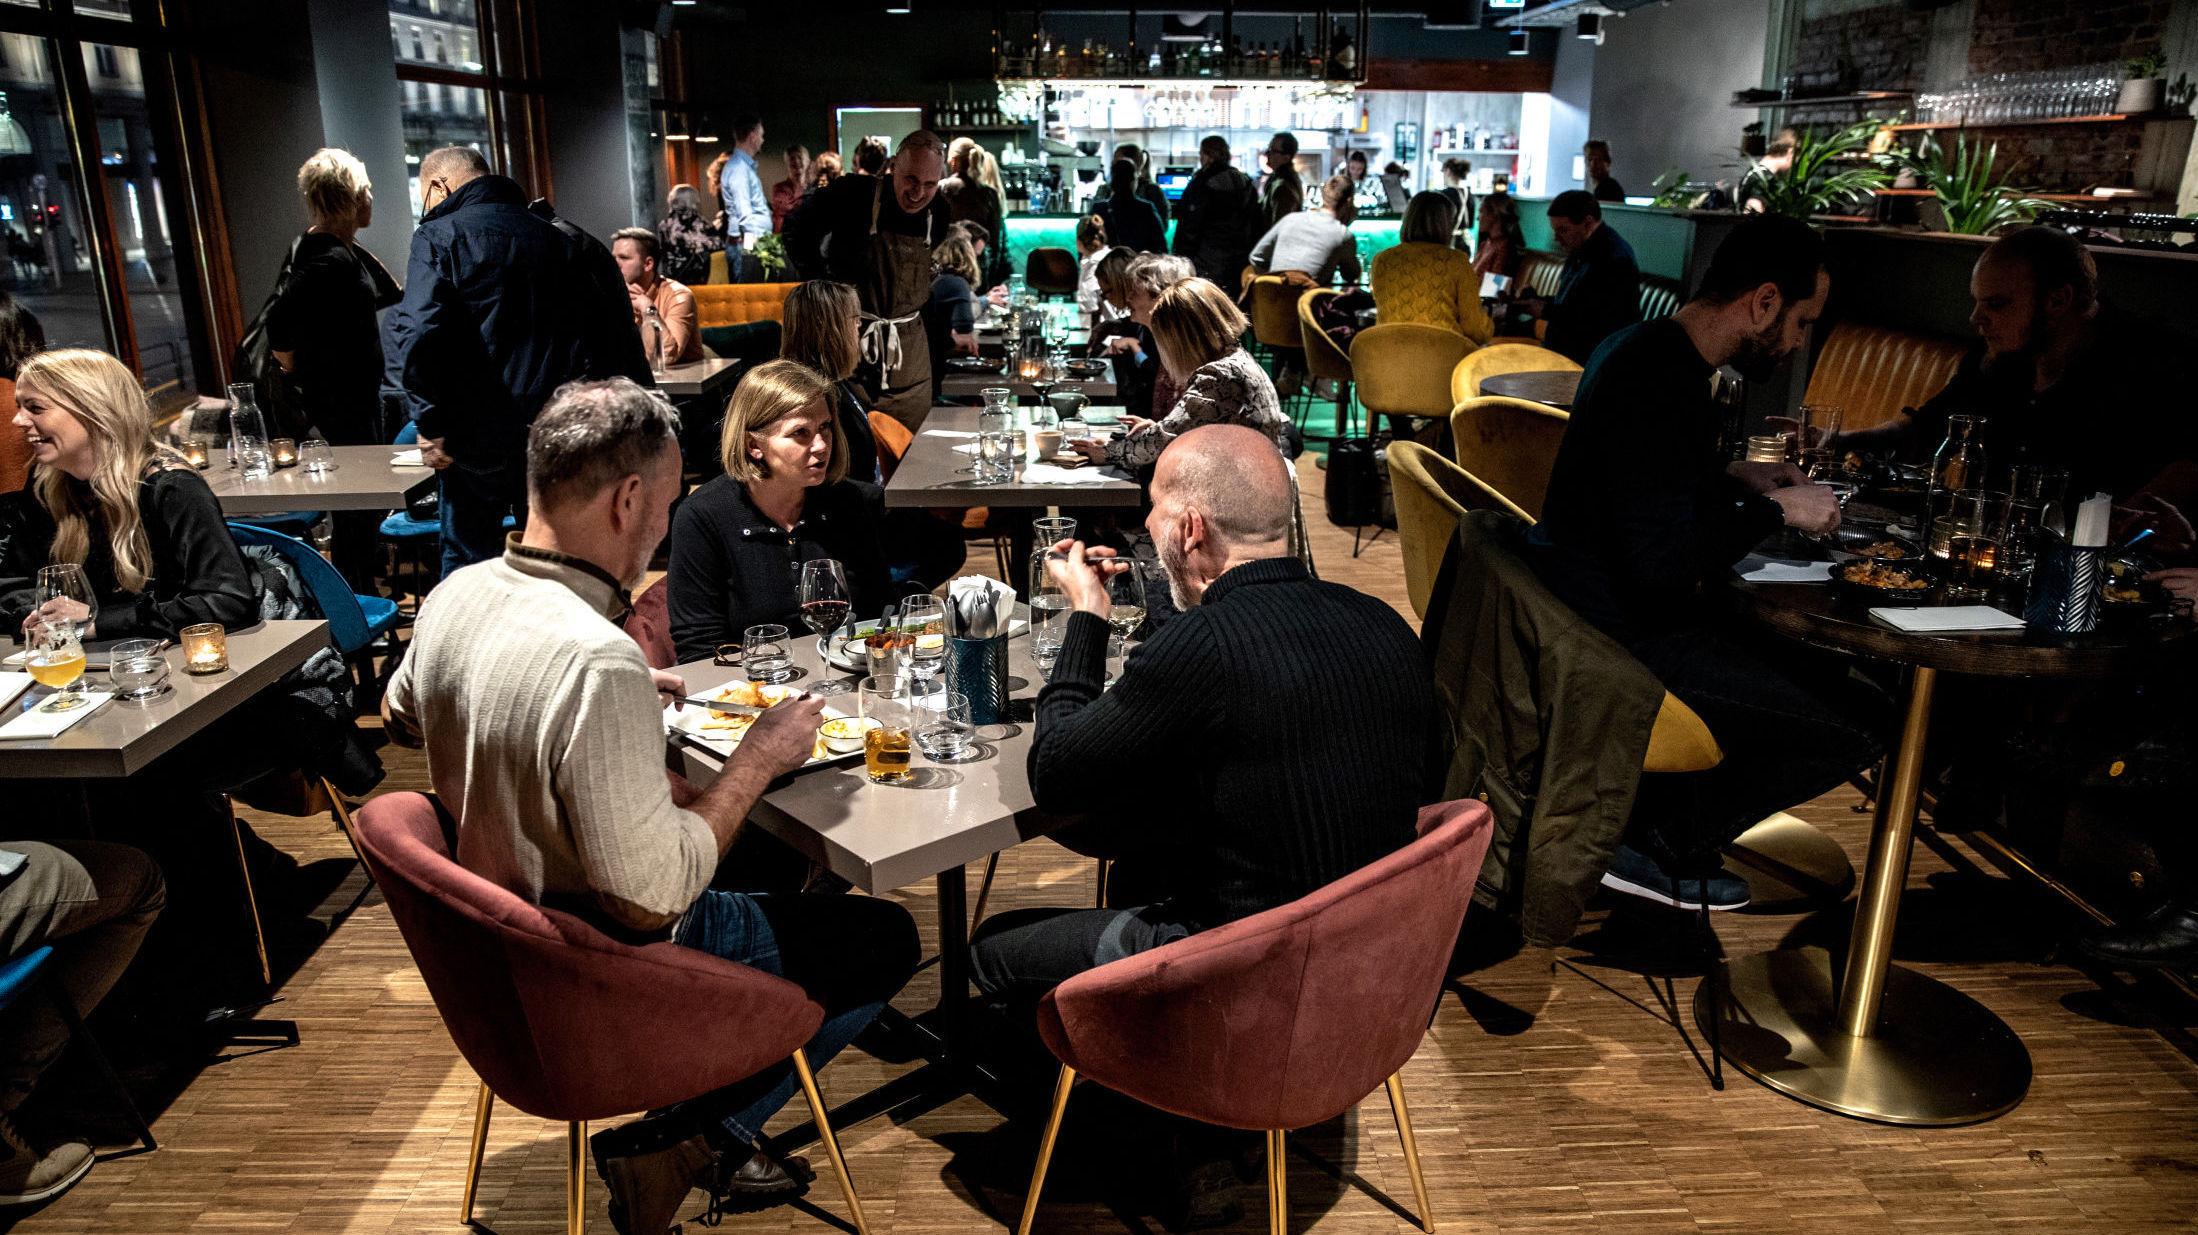 Restaurantanmeldelse av Bjerck i Bergen: For folk flest